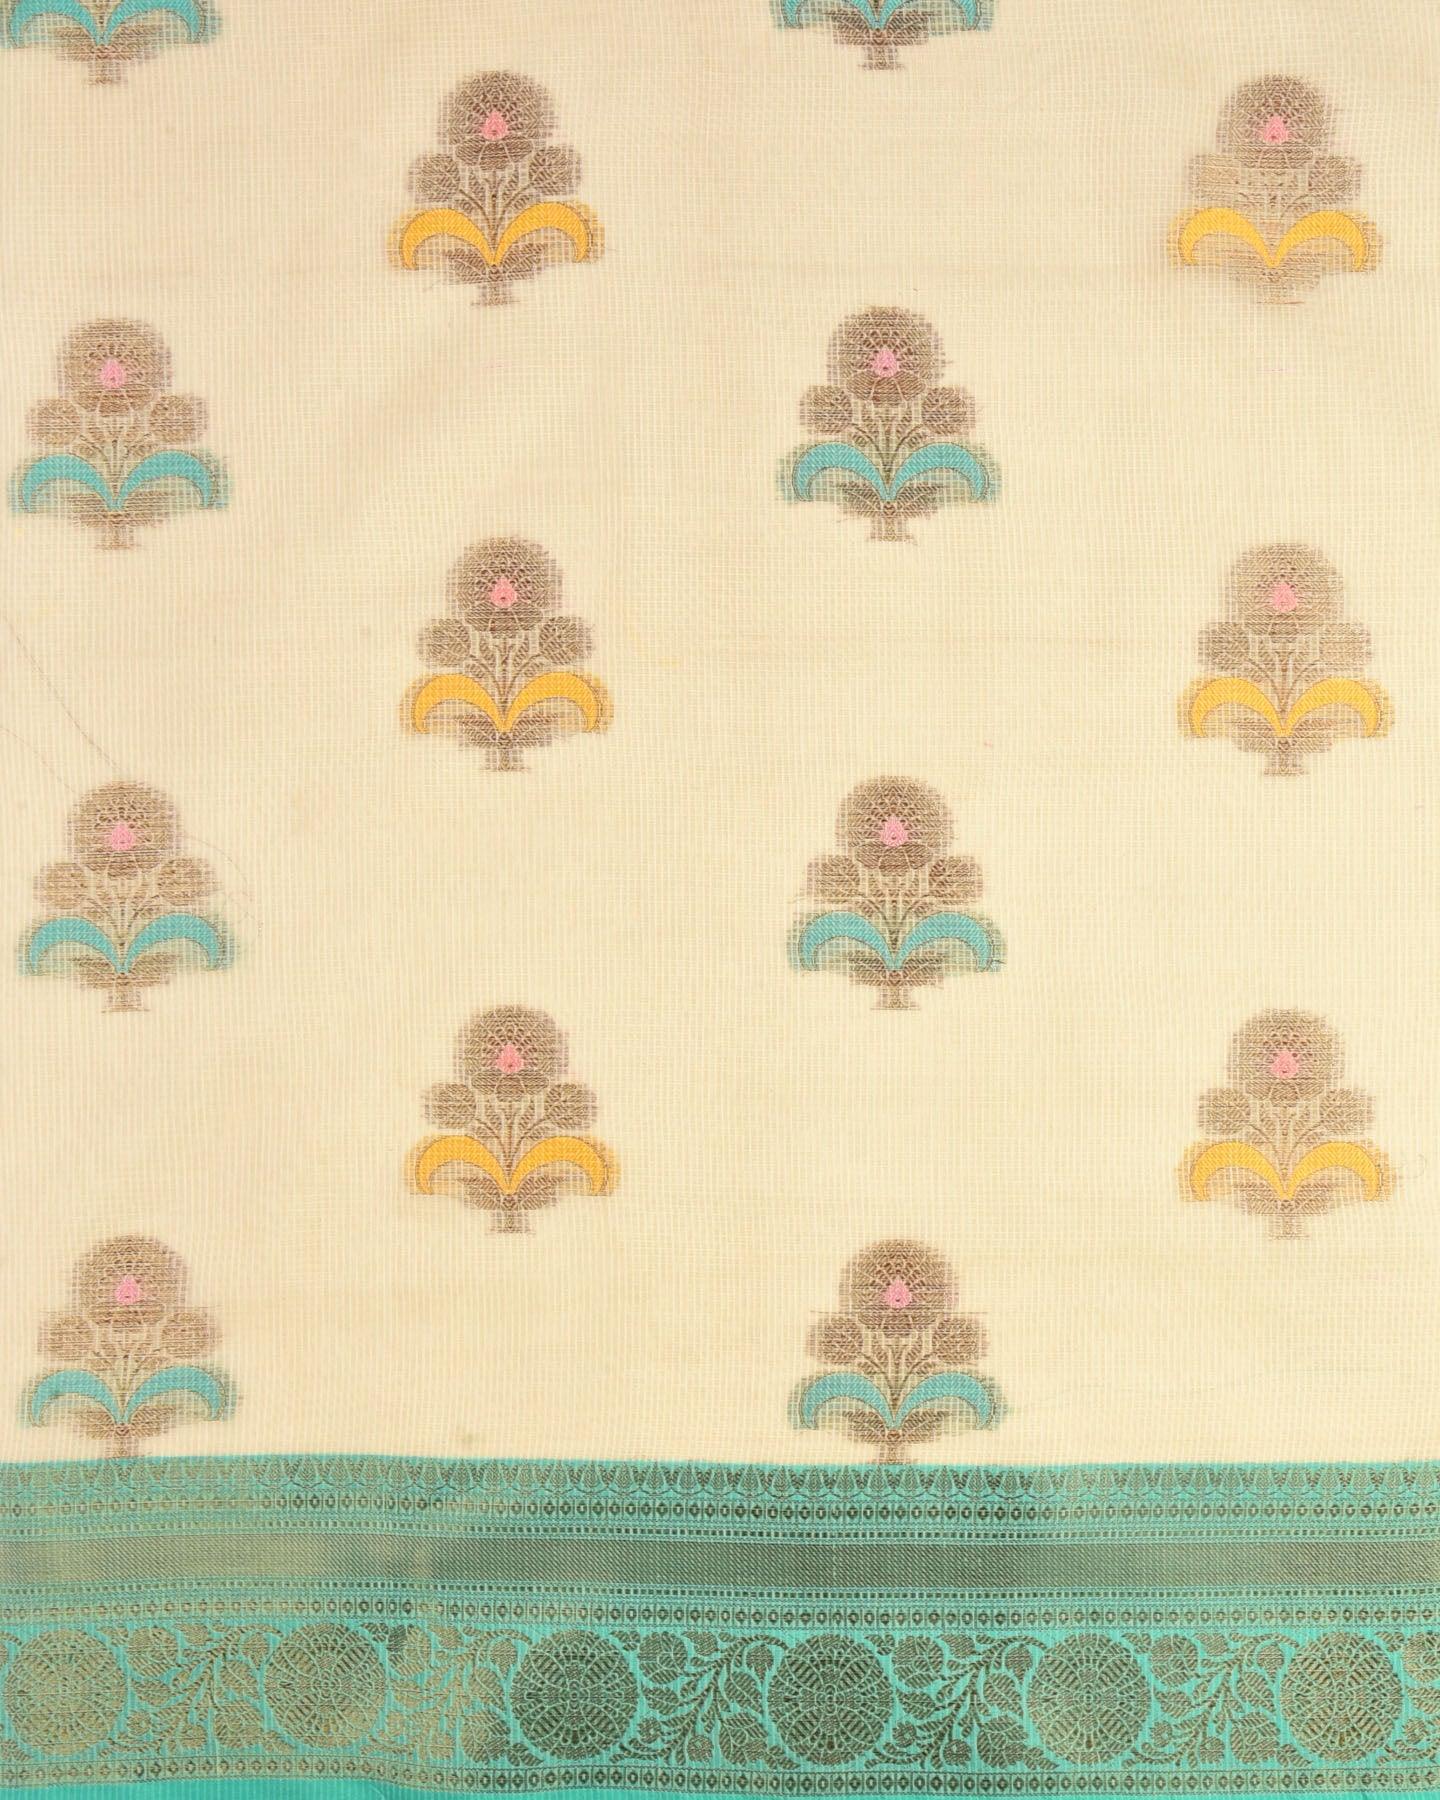 Cream Banarasi Check Texture Antique Zari Buta Cutwork Brocade Woven Cotton Silk Saree with Contrast Green Border Pallu - By HolyWeaves, Benares